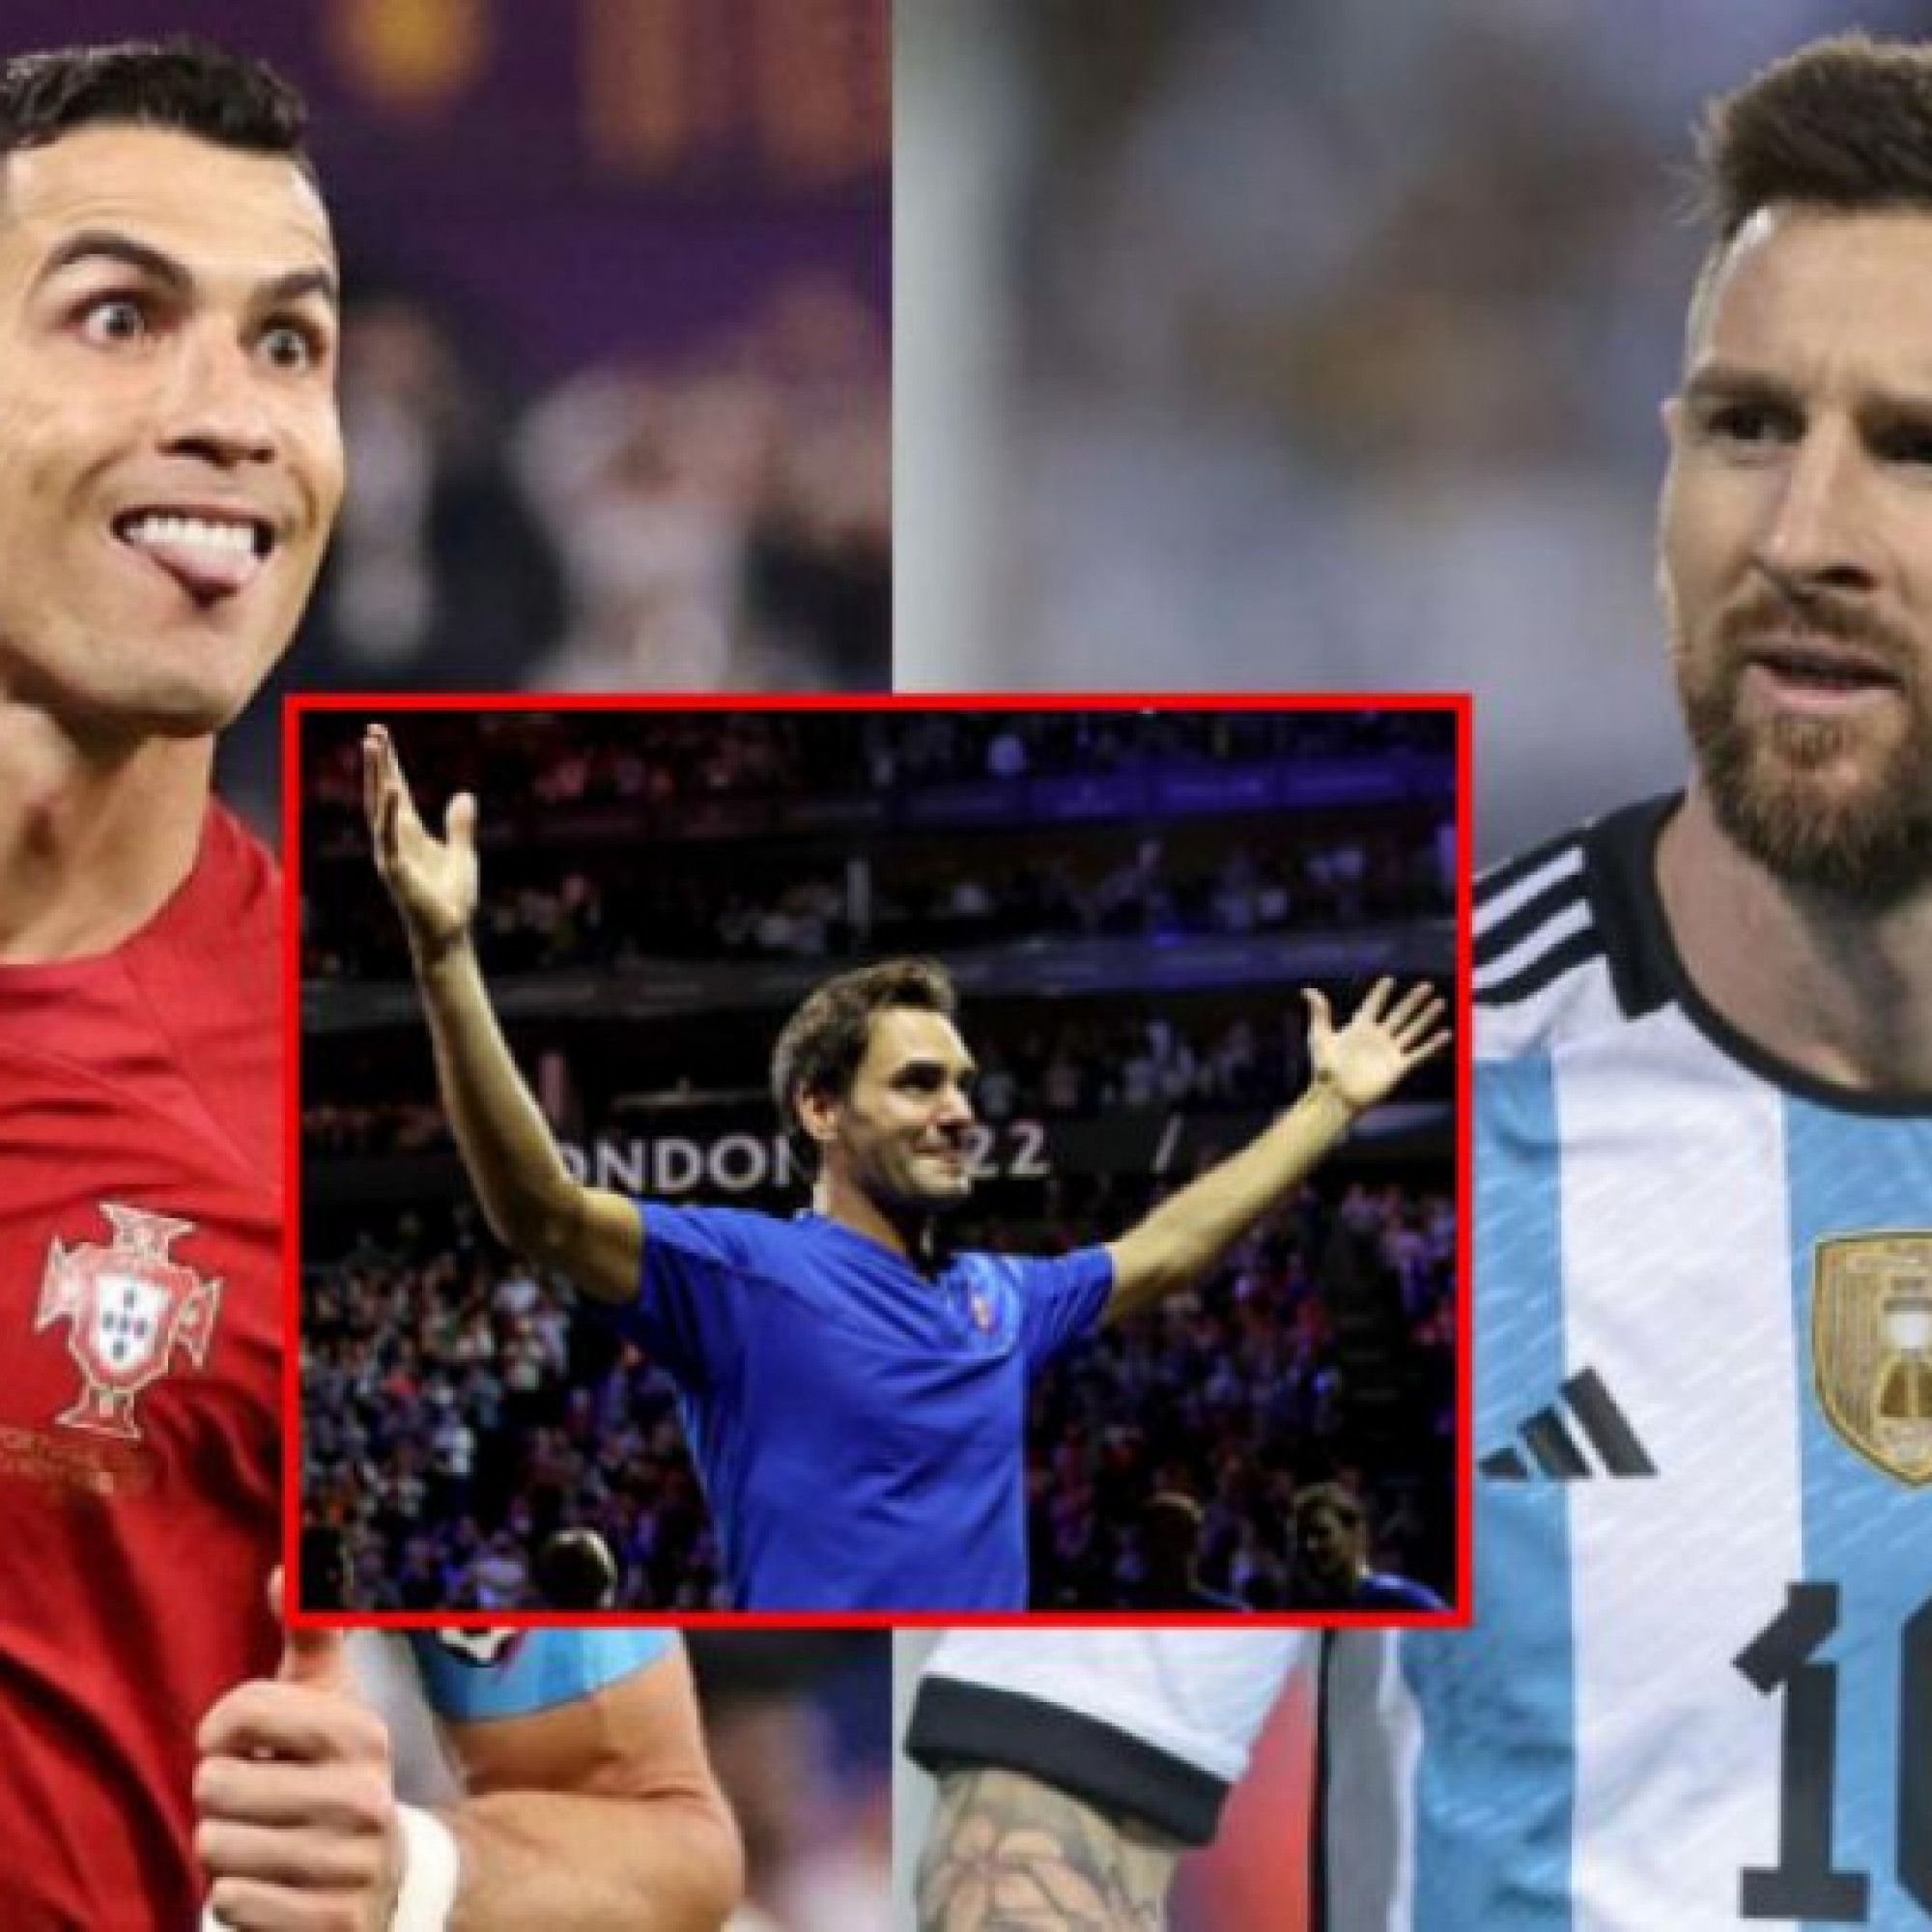 Thể thao - Vé xem Federer đắt gấp ba chung kết World Cup trong mơ có Ronaldo đấu Messi